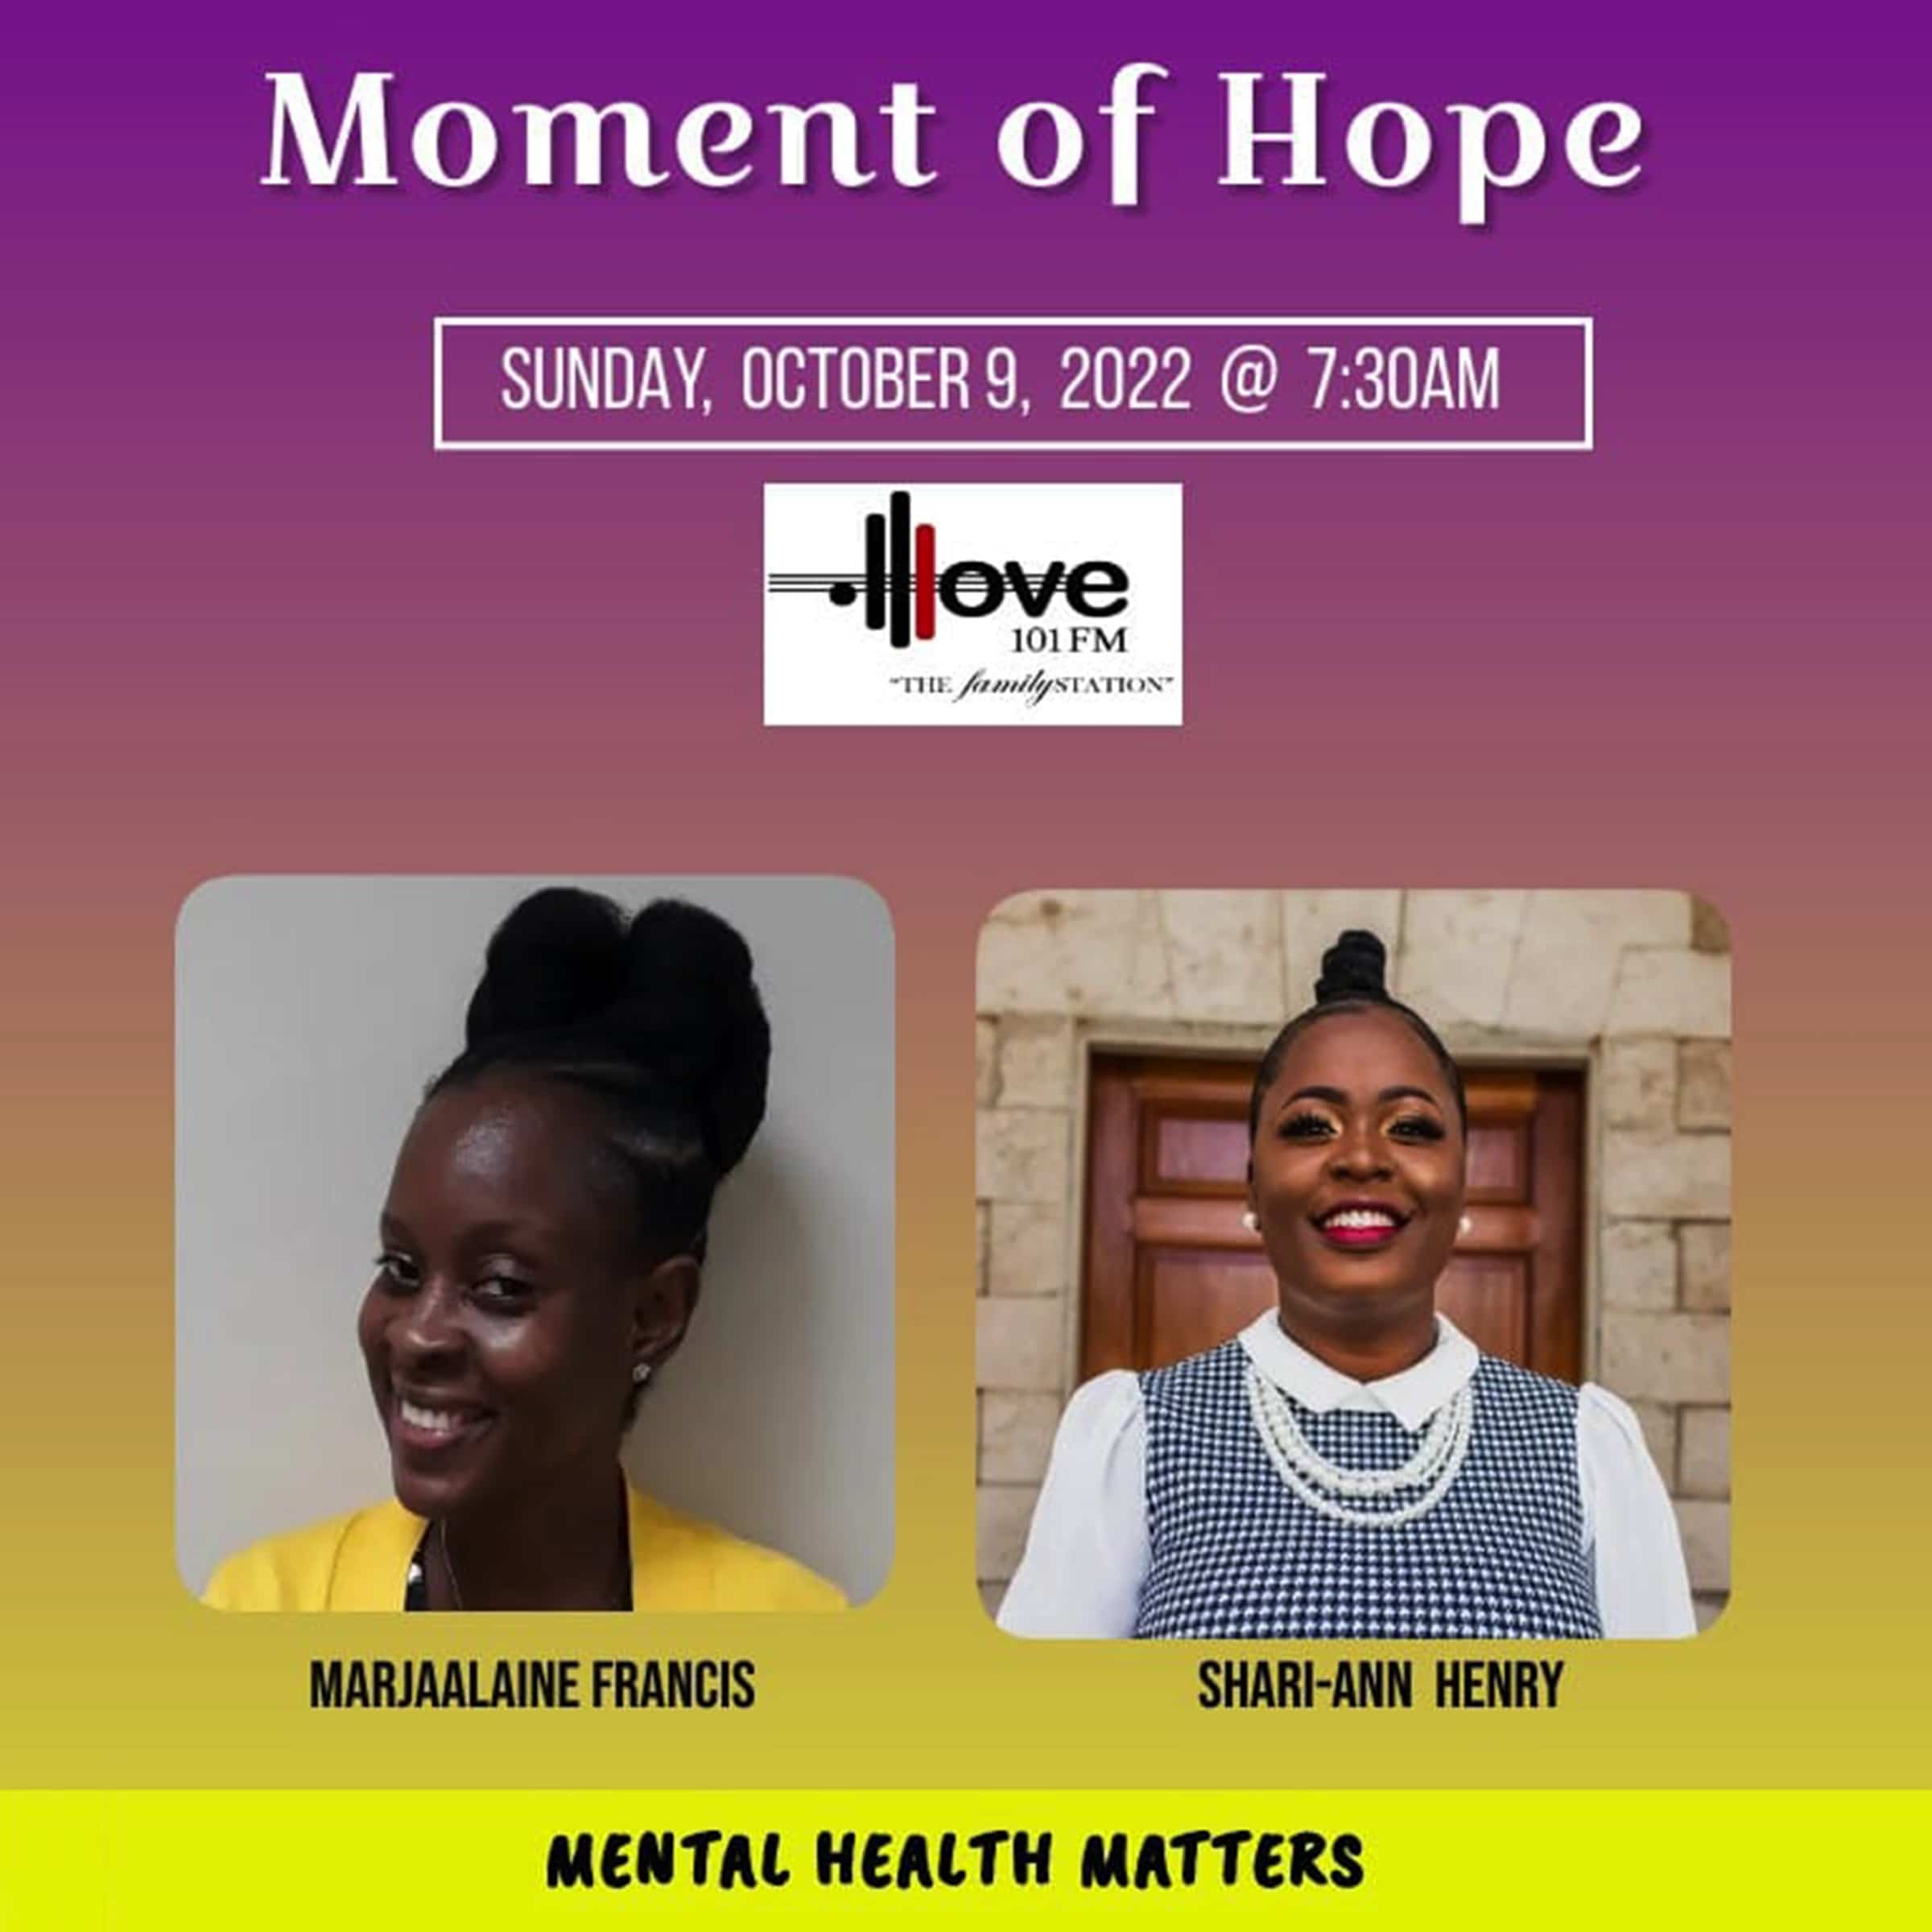 Mental Health Matters – Shari-Ann Henry on Moment of Hope